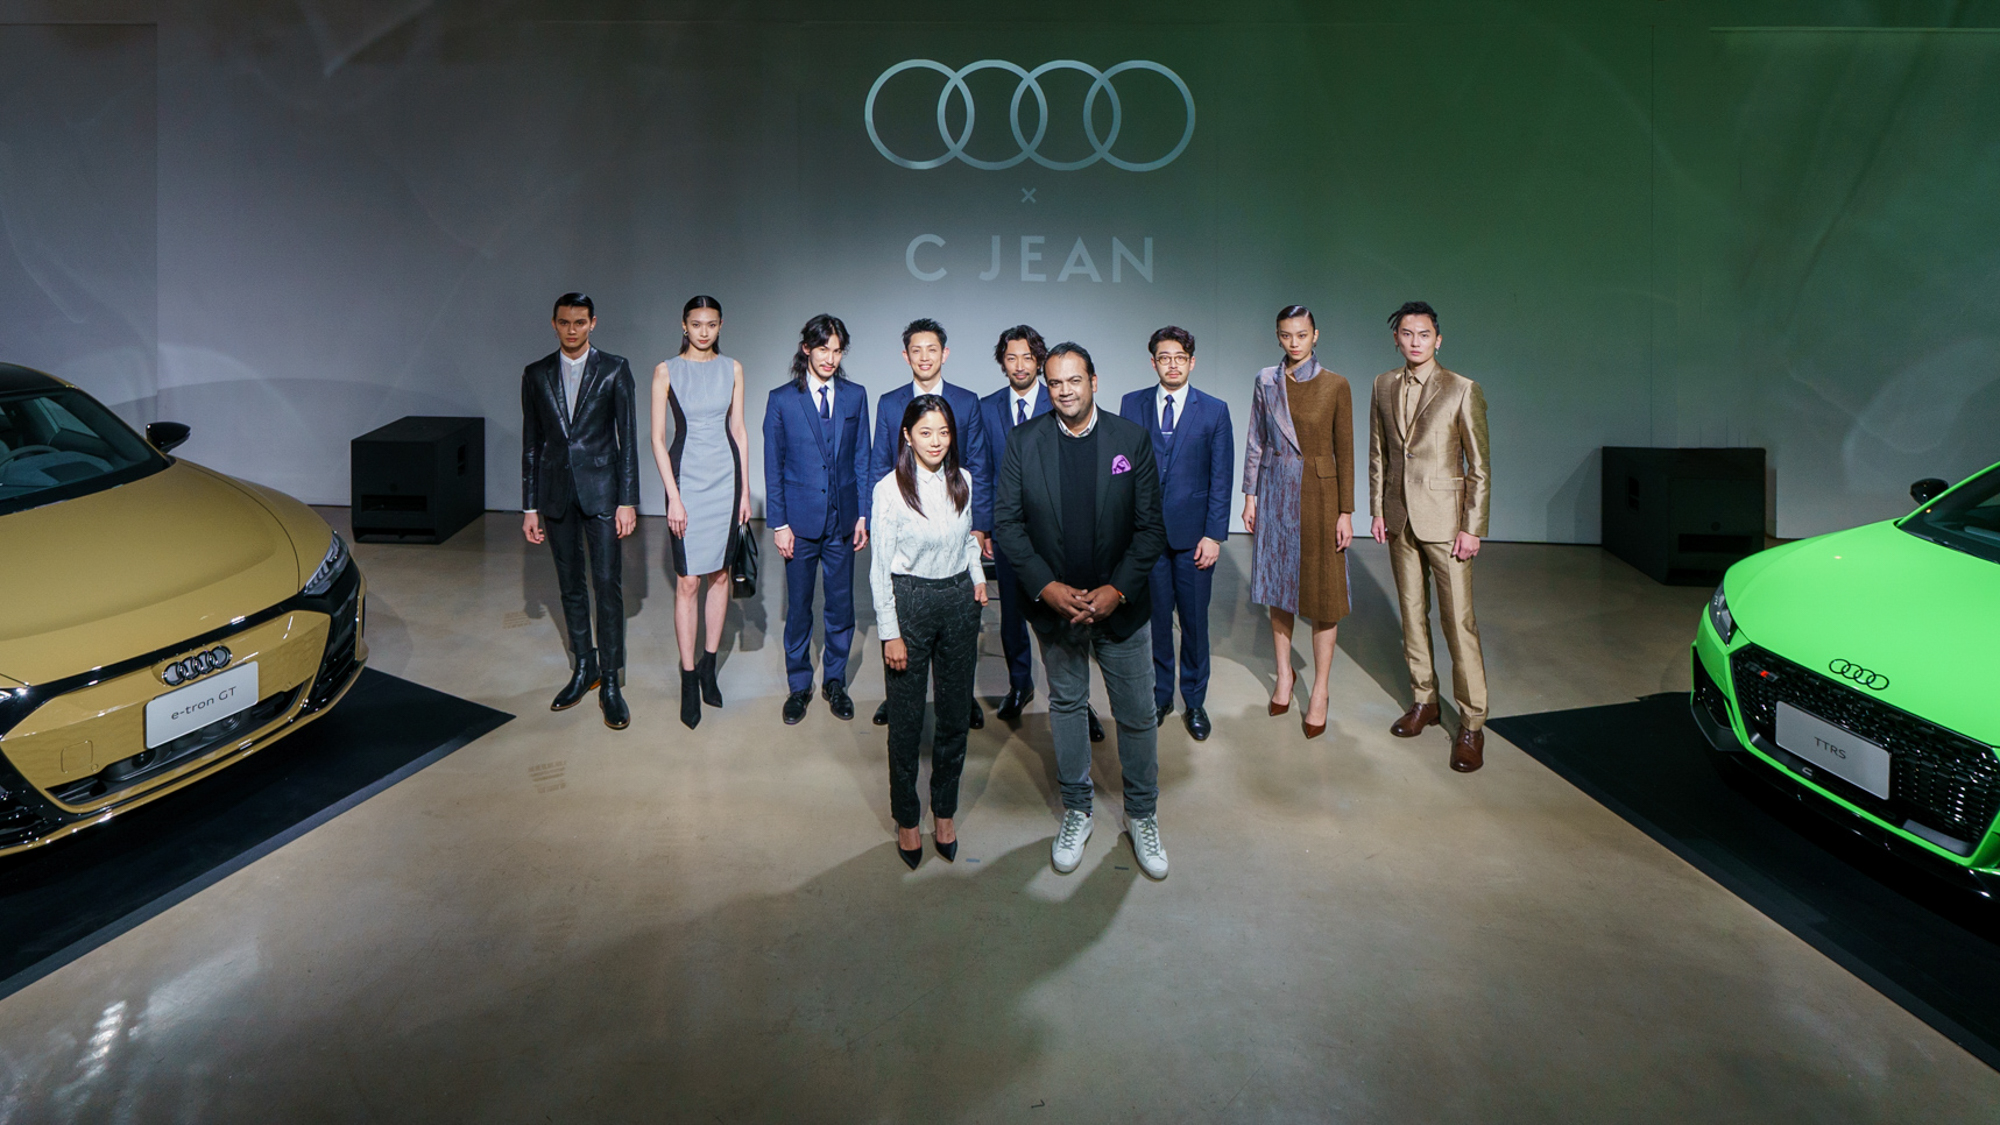 台灣奧迪 x 時尚設計師 C JEAN 簡君嫄跨界對談當代美學與永續設計